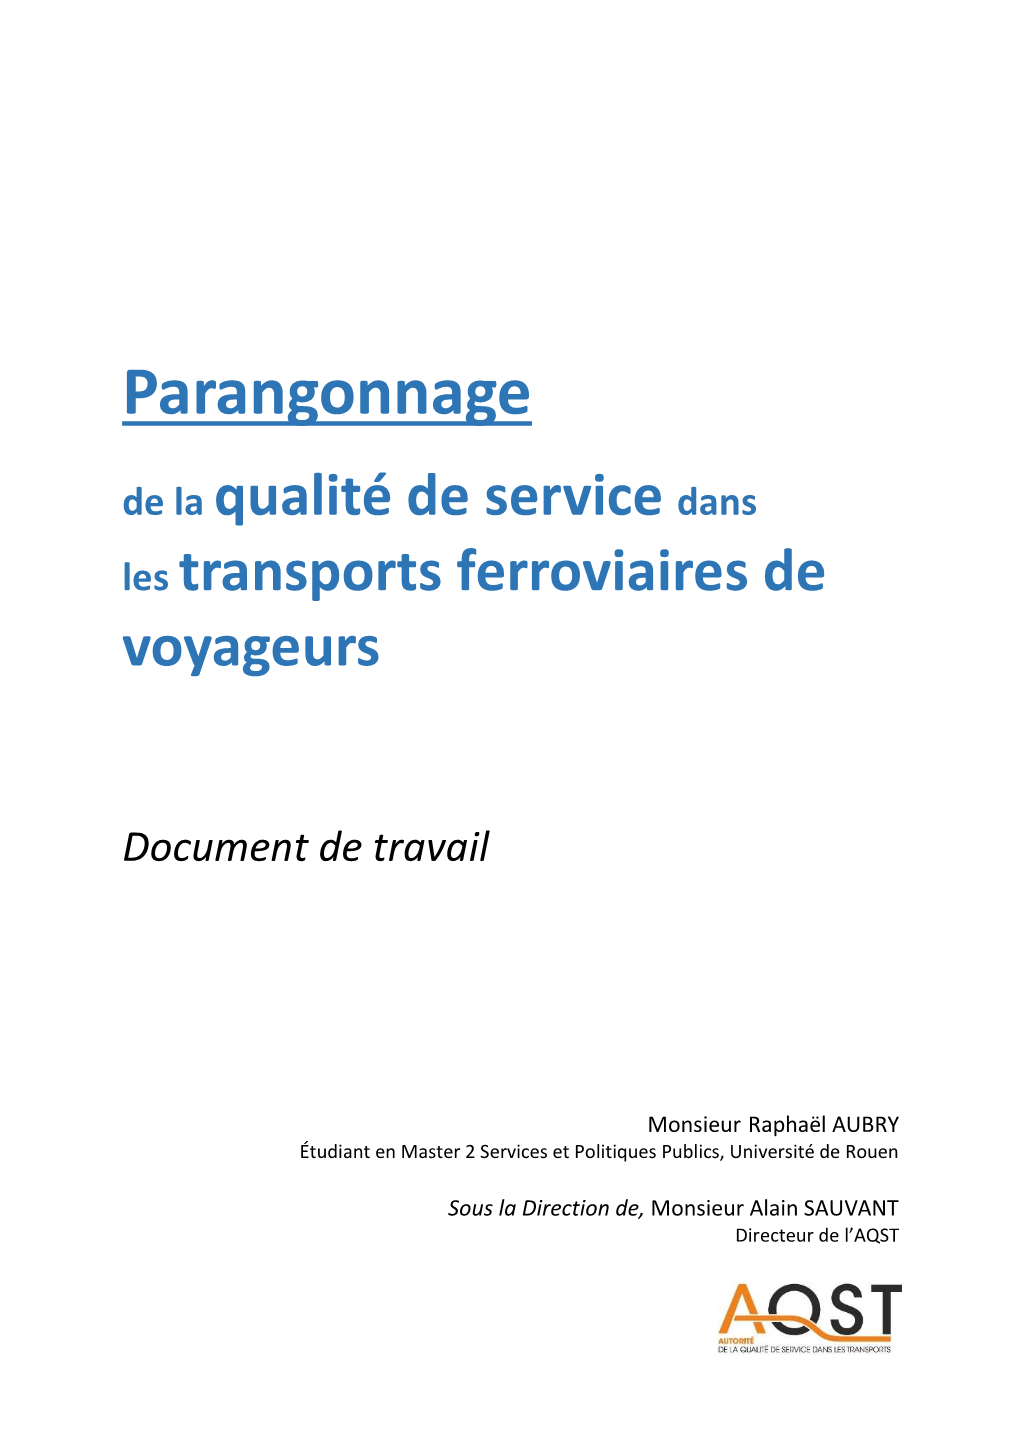 Parangonnage De La Qualité De Service Dans Les Transports Ferroviaires De Voyageurs